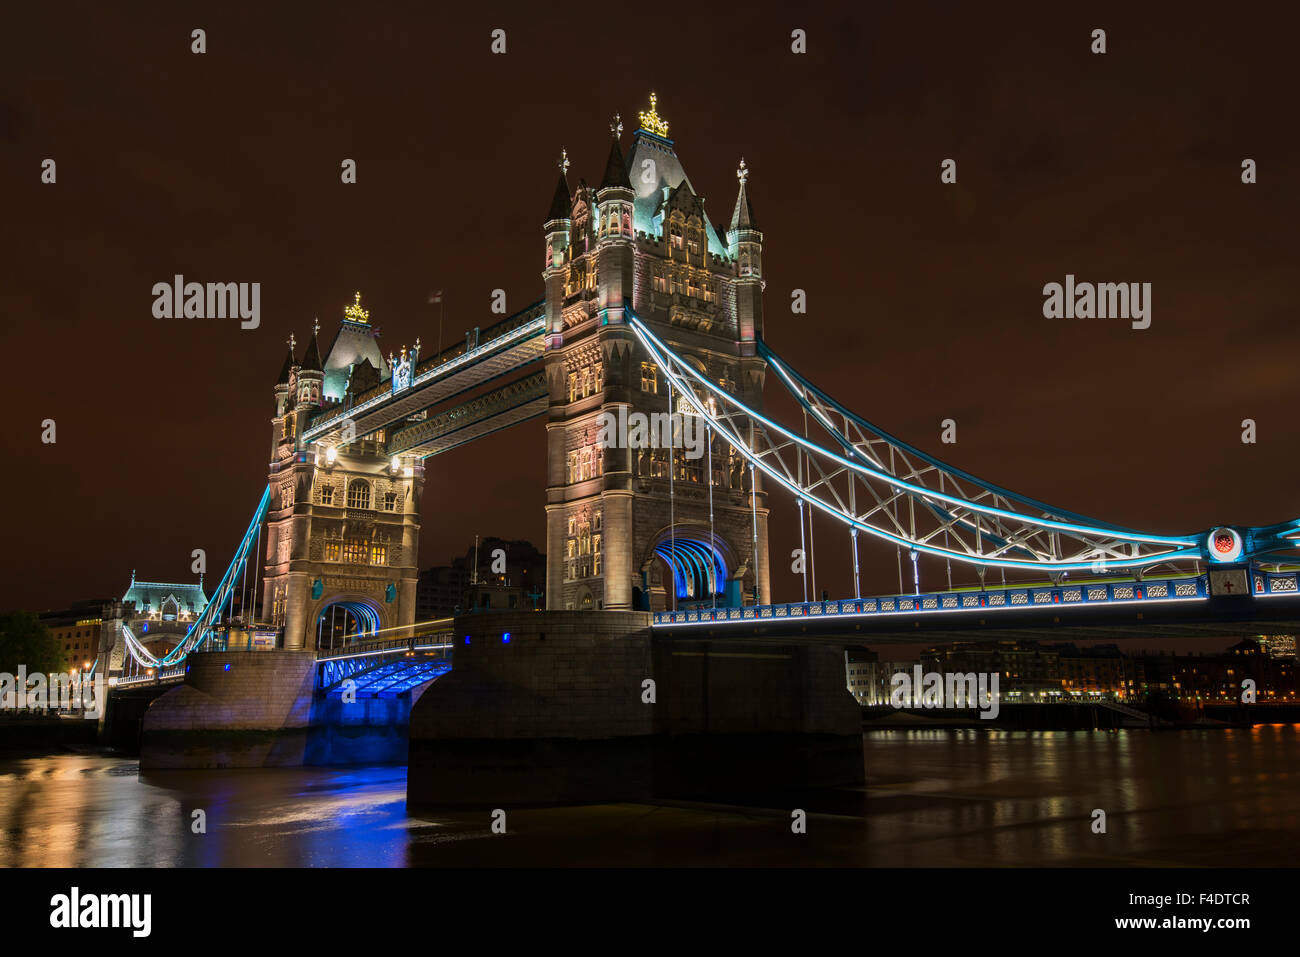 Inglaterra, Londres. Puente de la torre en la noche. El crédito como: Dennis Kirkland Jaynes DanitaDelimont.com / Galería / Gran formato (tamaños disponibles). Foto de stock